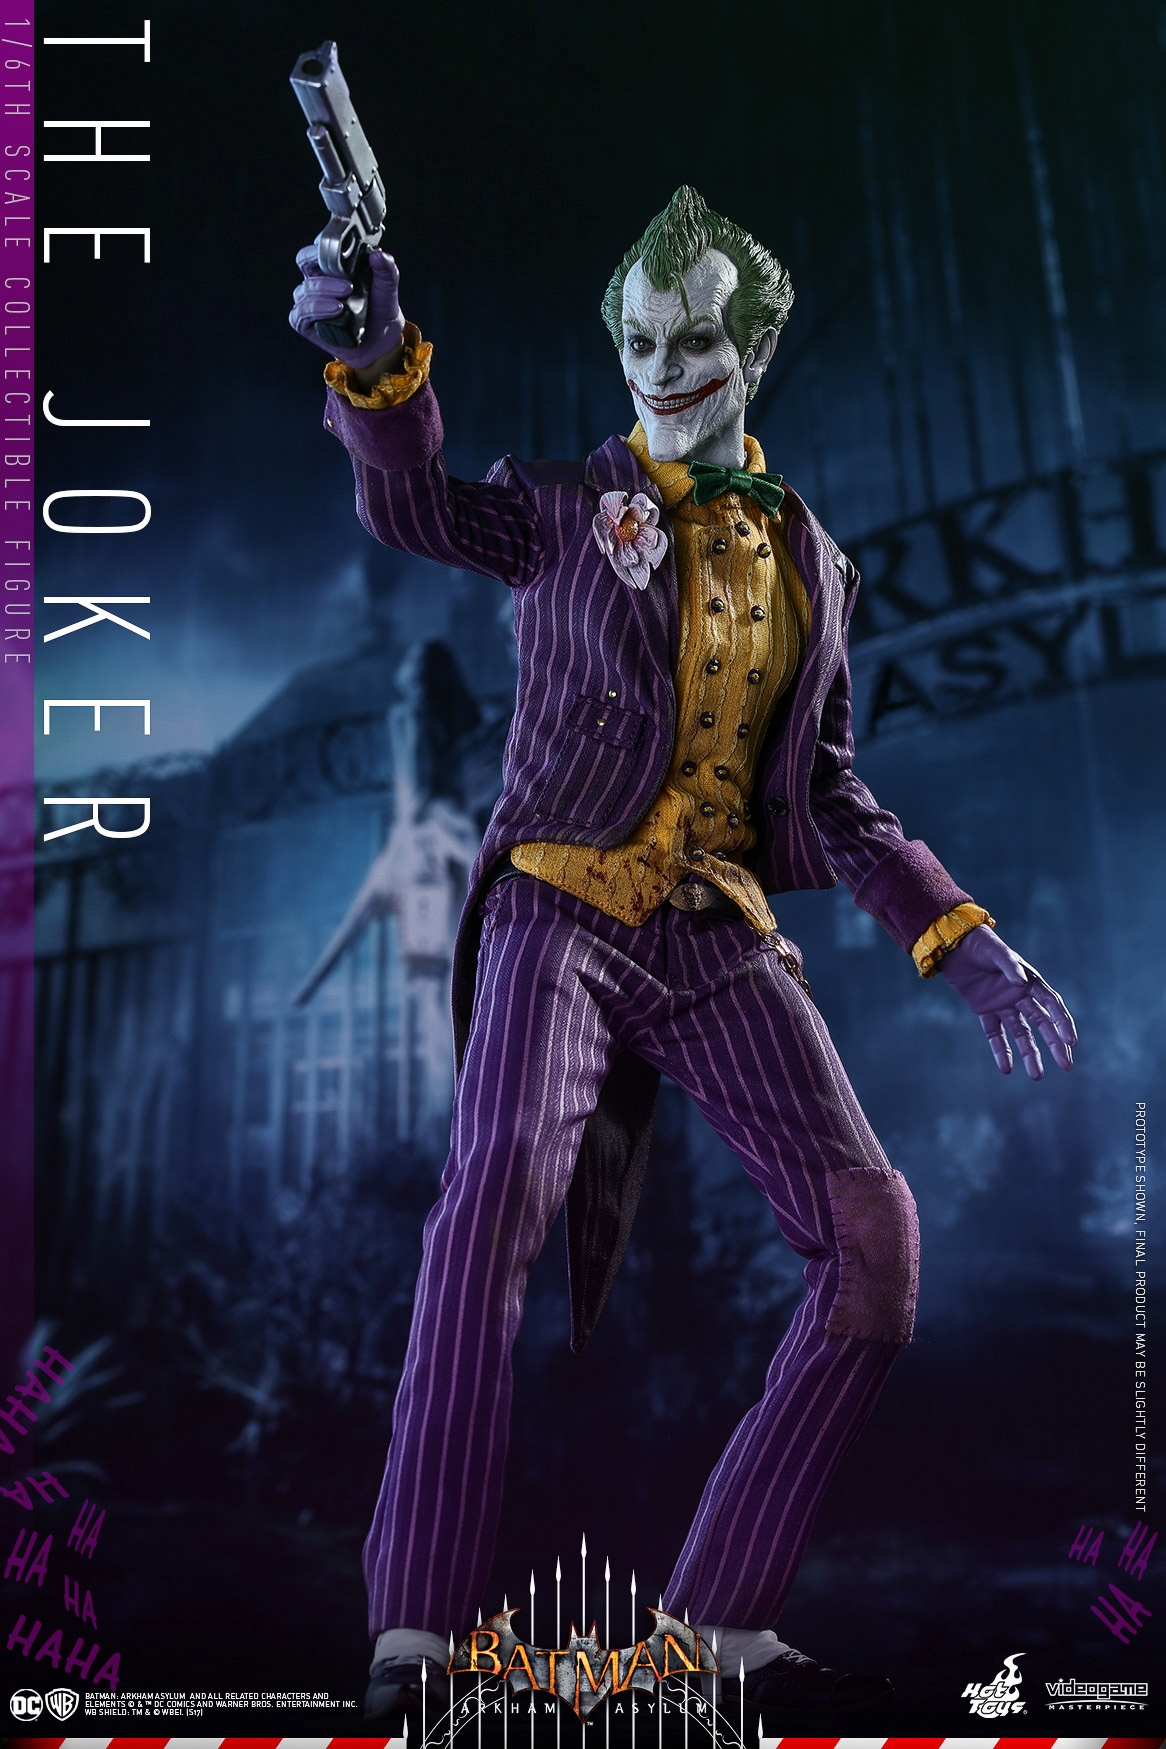 Hot-Toys-Batman-Arkham-Asylum-Joker-Collectible-Figure-004.jpg